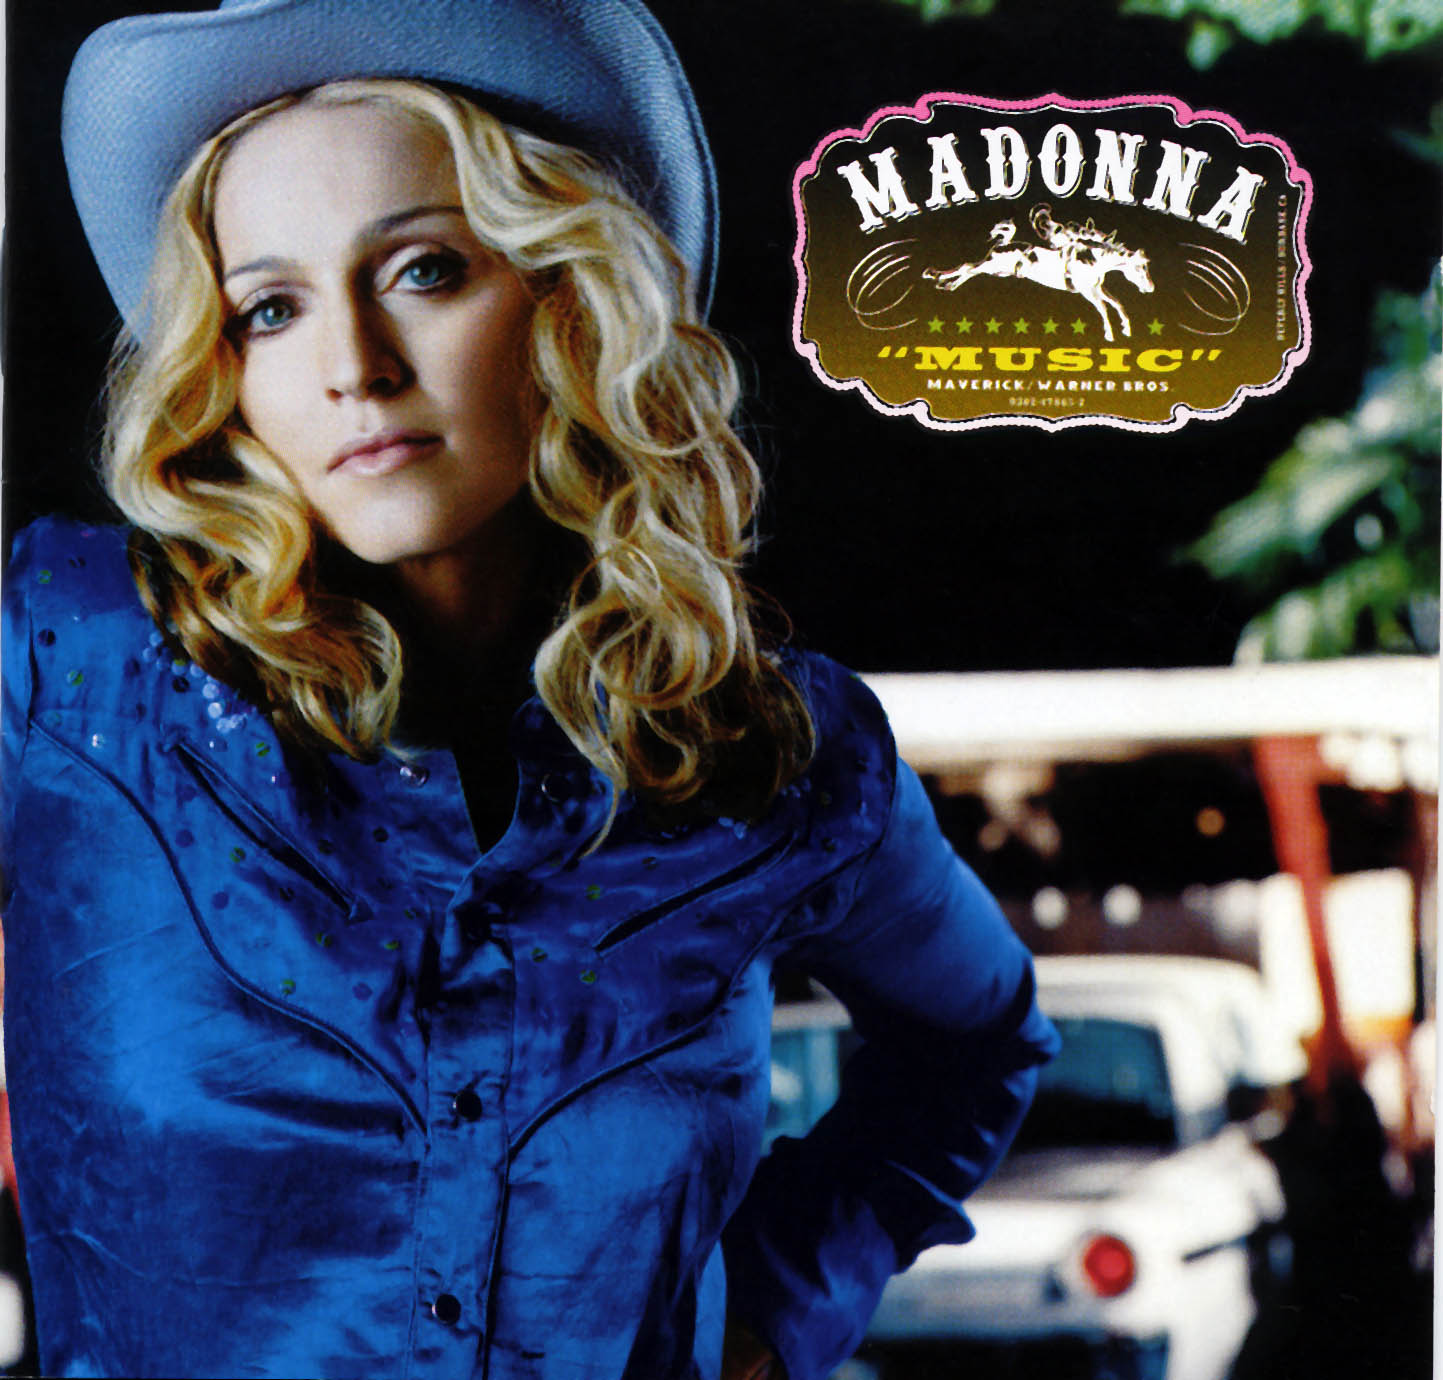 http://3.bp.blogspot.com/-O0ClkKqWaXY/TwoxtbYJYfI/AAAAAAAAAOs/3vg0ybvpsXg/s1600/Madonna-Music-Frontal.jpg